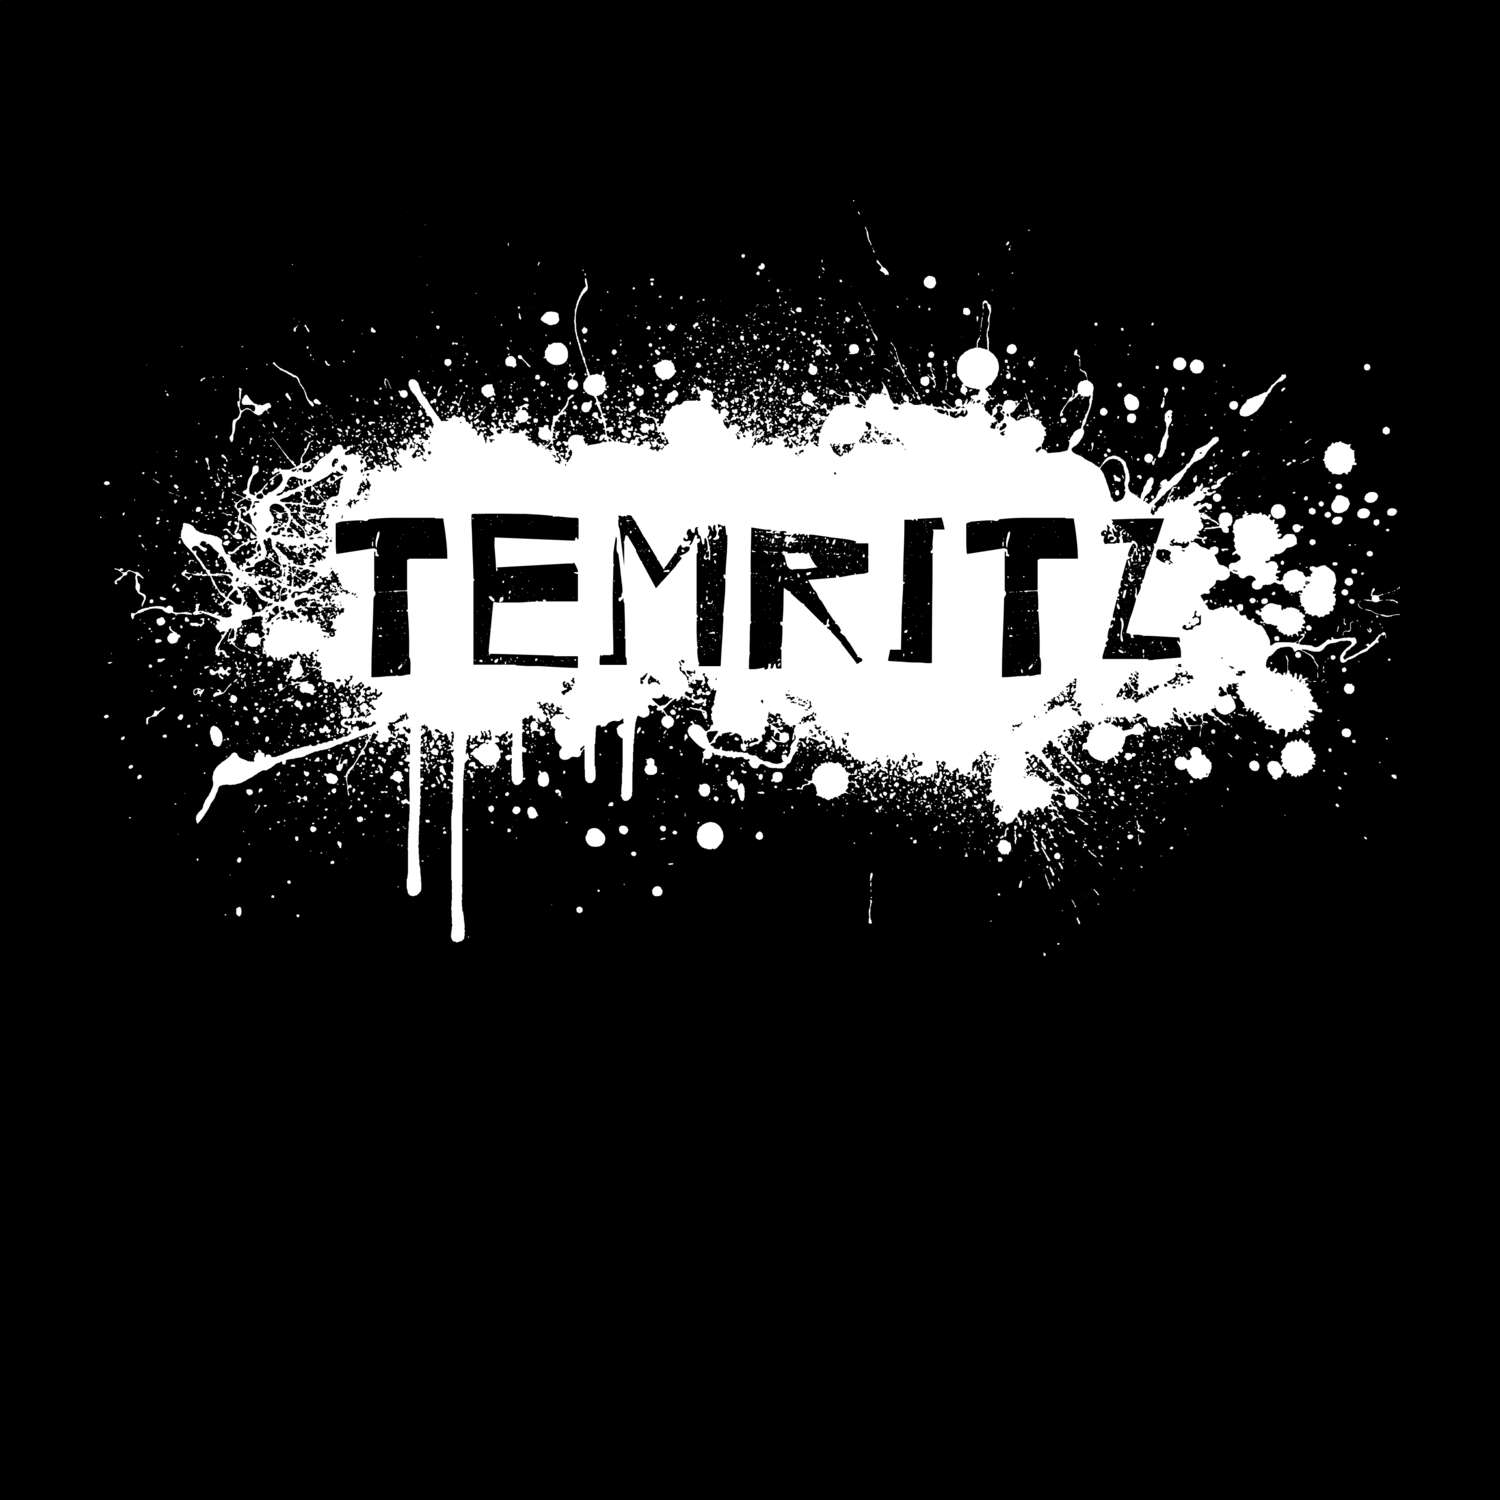 Temritz T-Shirt »Paint Splash Punk«